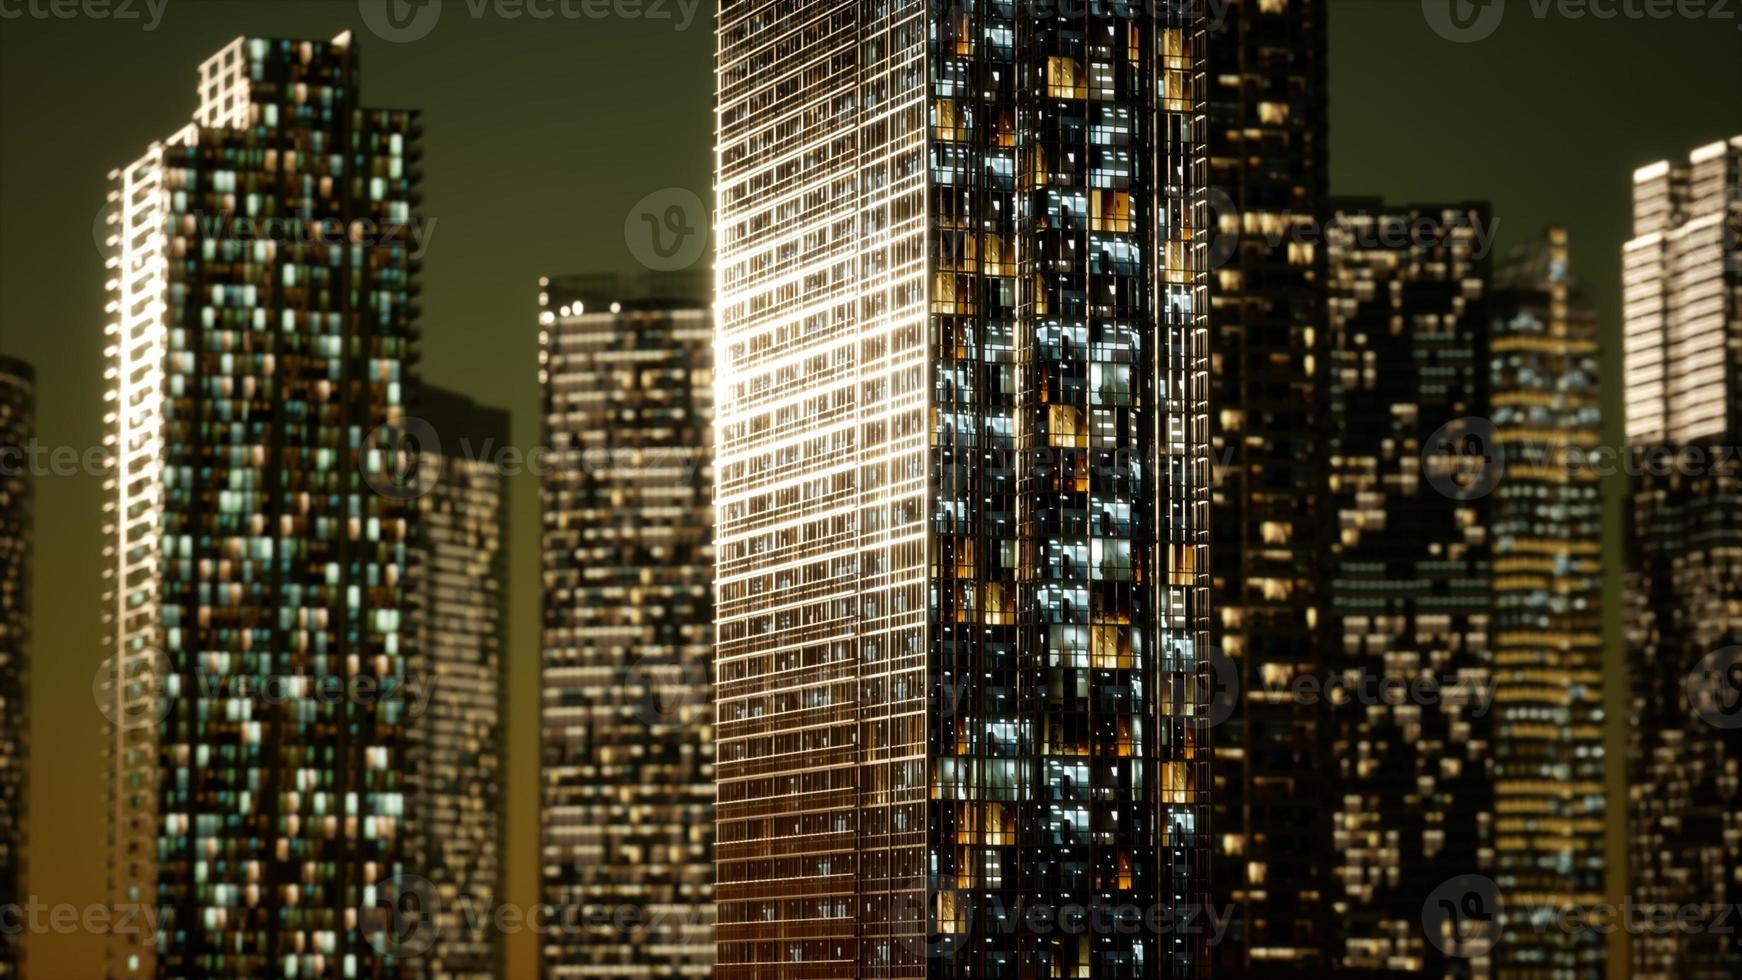 rascacielos en el barrio de negocios en la noche foto